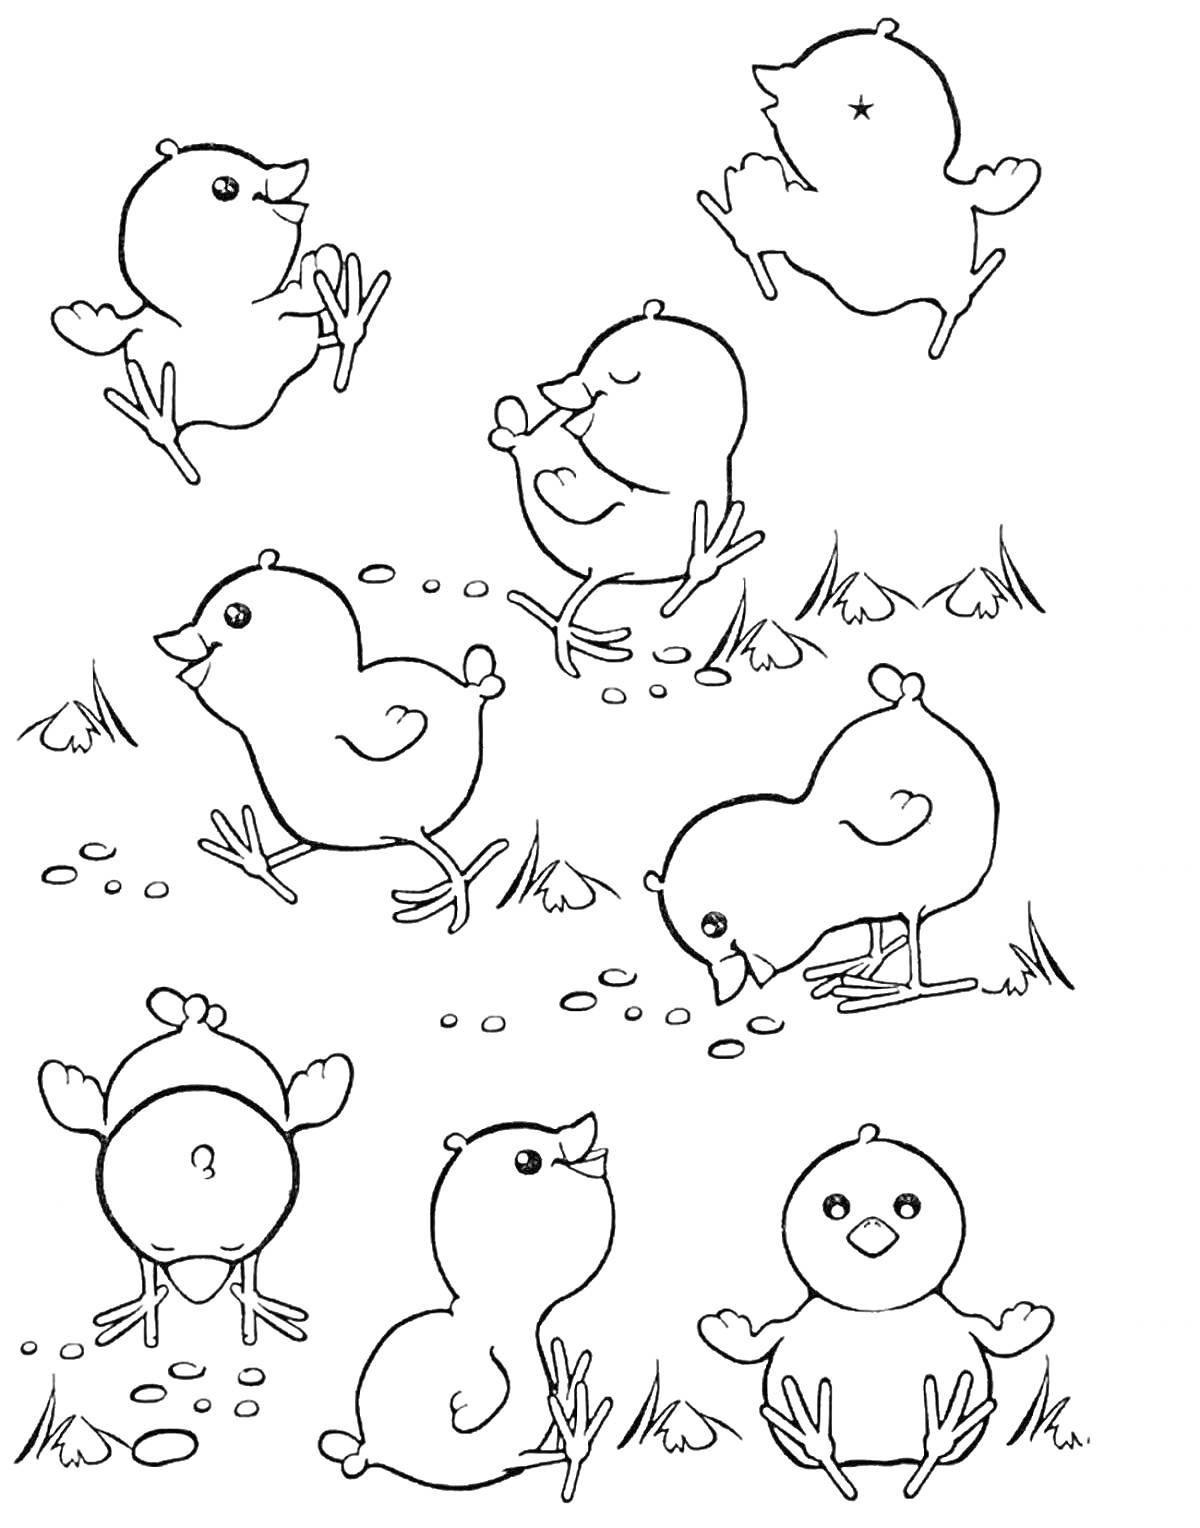 Раскраска Семь цыплят, гуляющих и играющих на траве